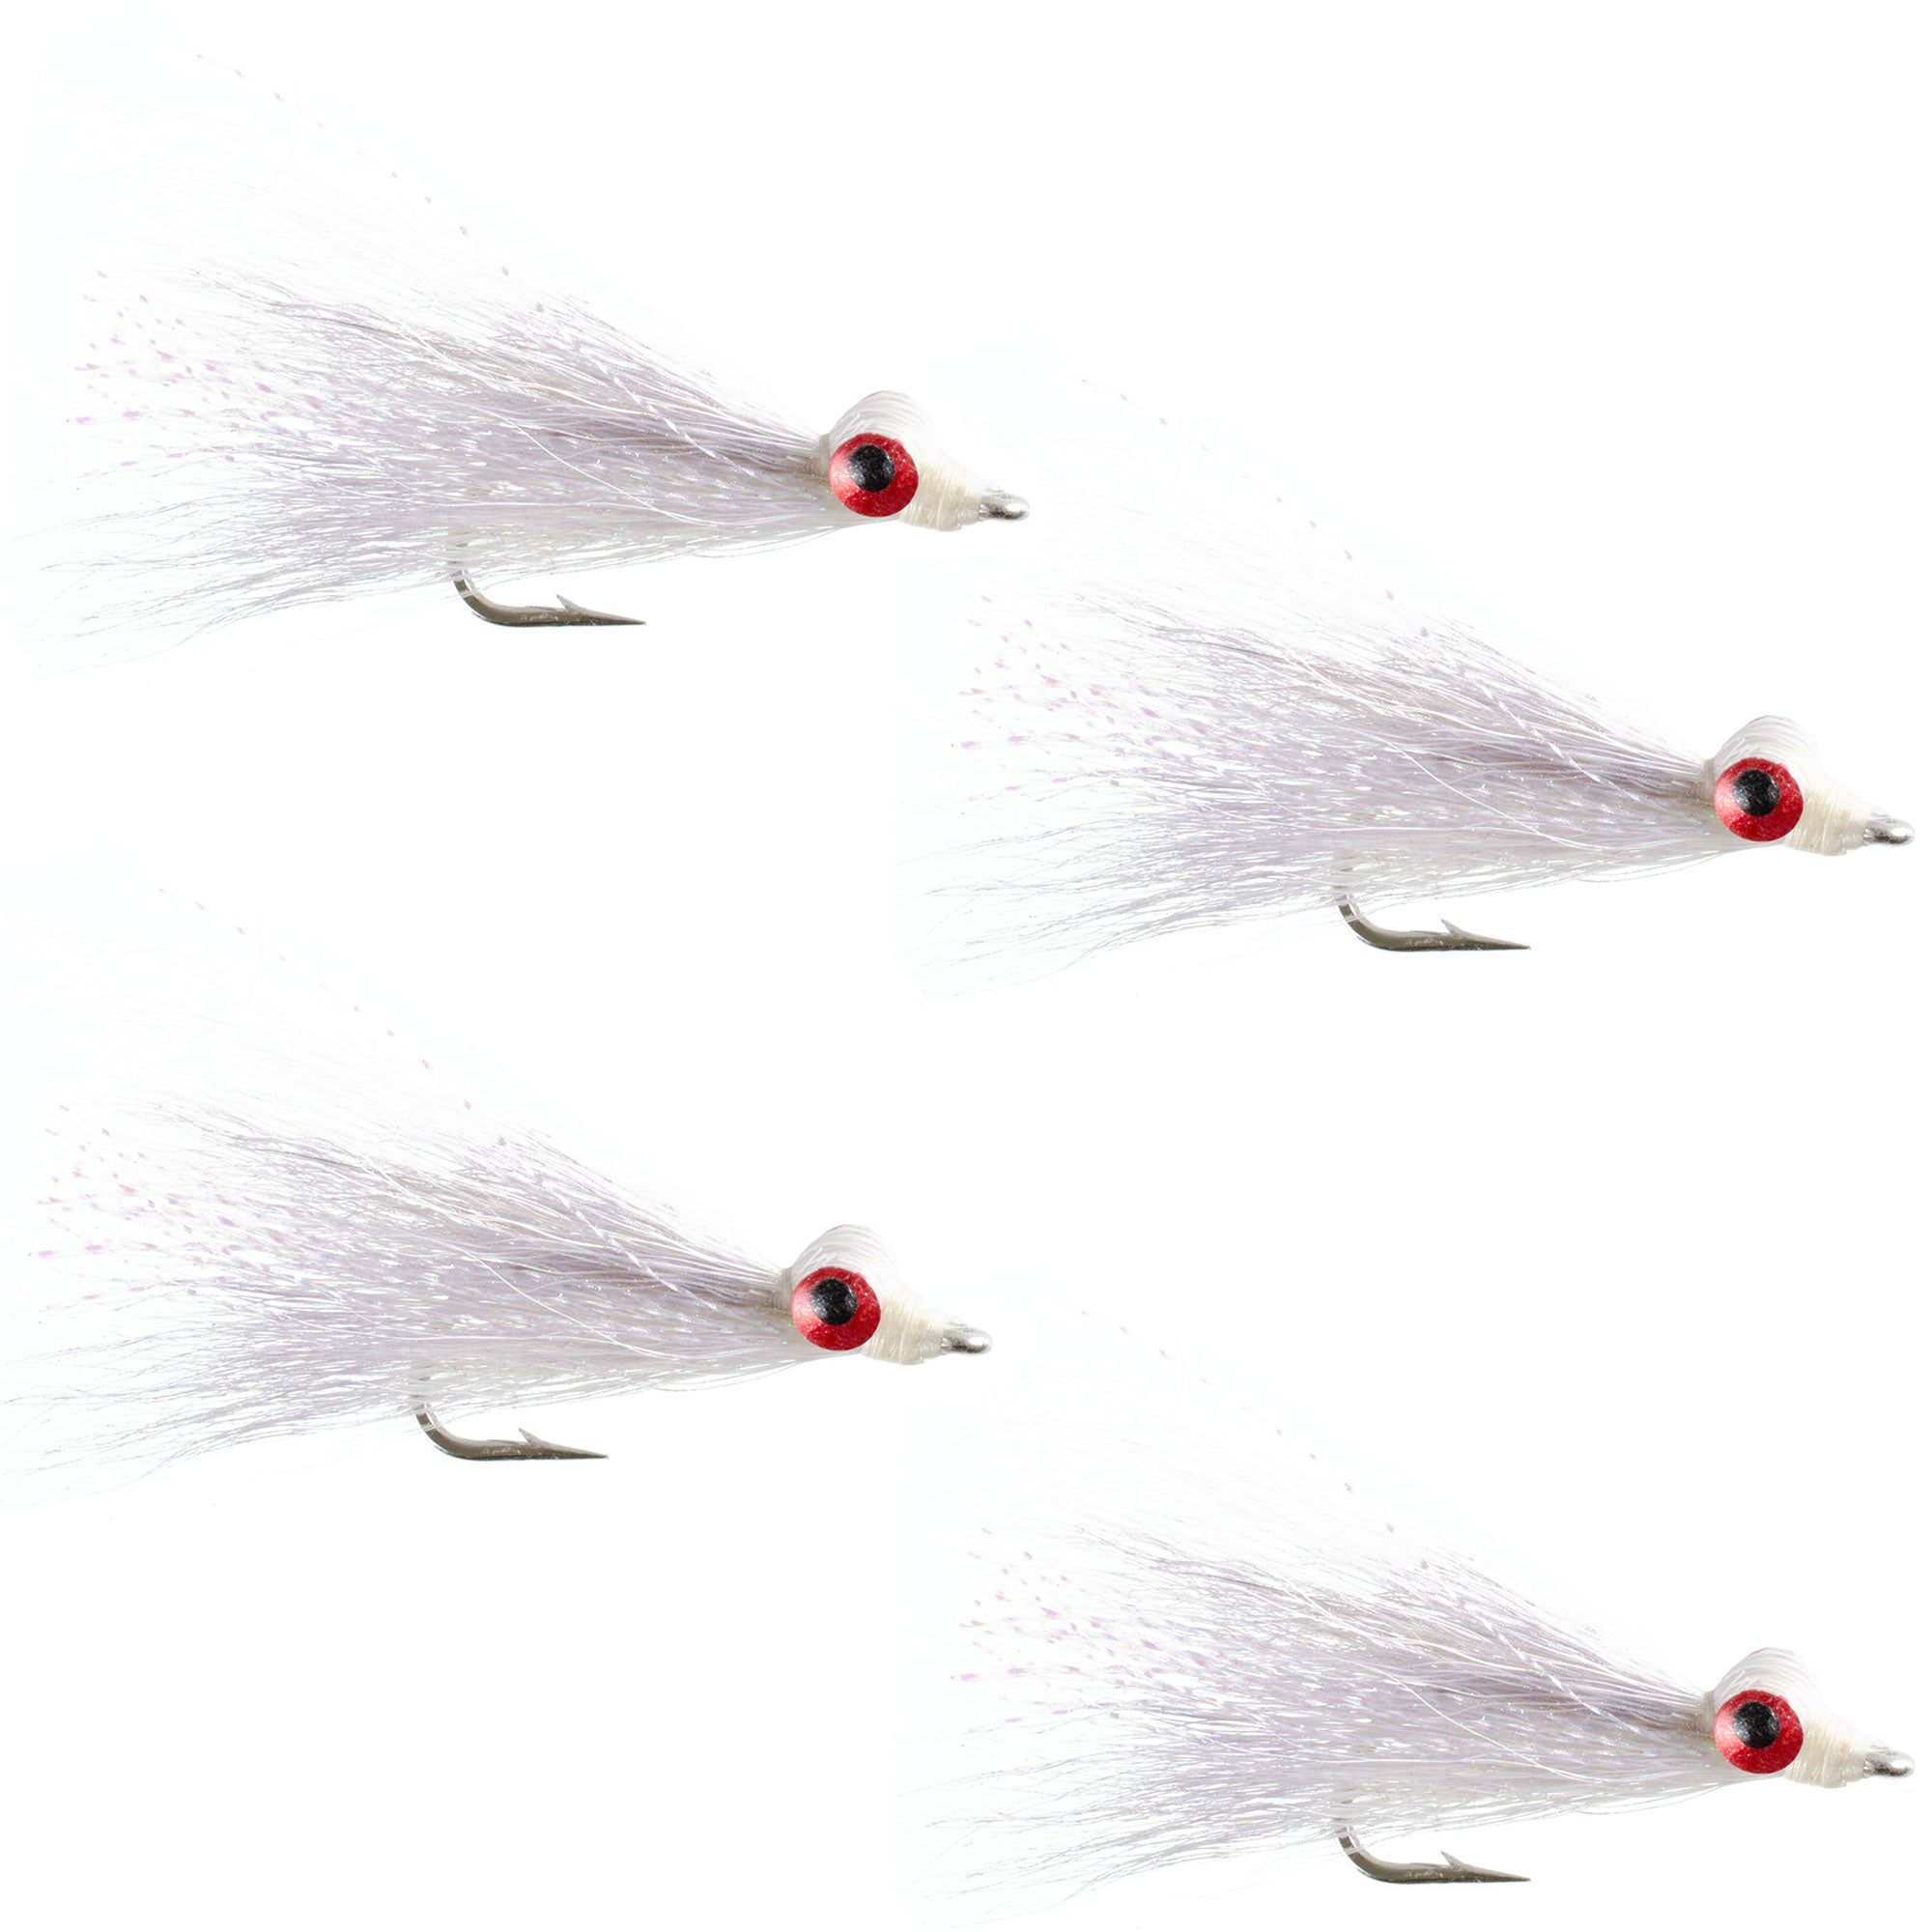 Clousers Deep Minnow White - Moscas de pesca con mosca Streamer - 4 moscas de agua salada y lubina - Tamaño del anzuelo 1/0 